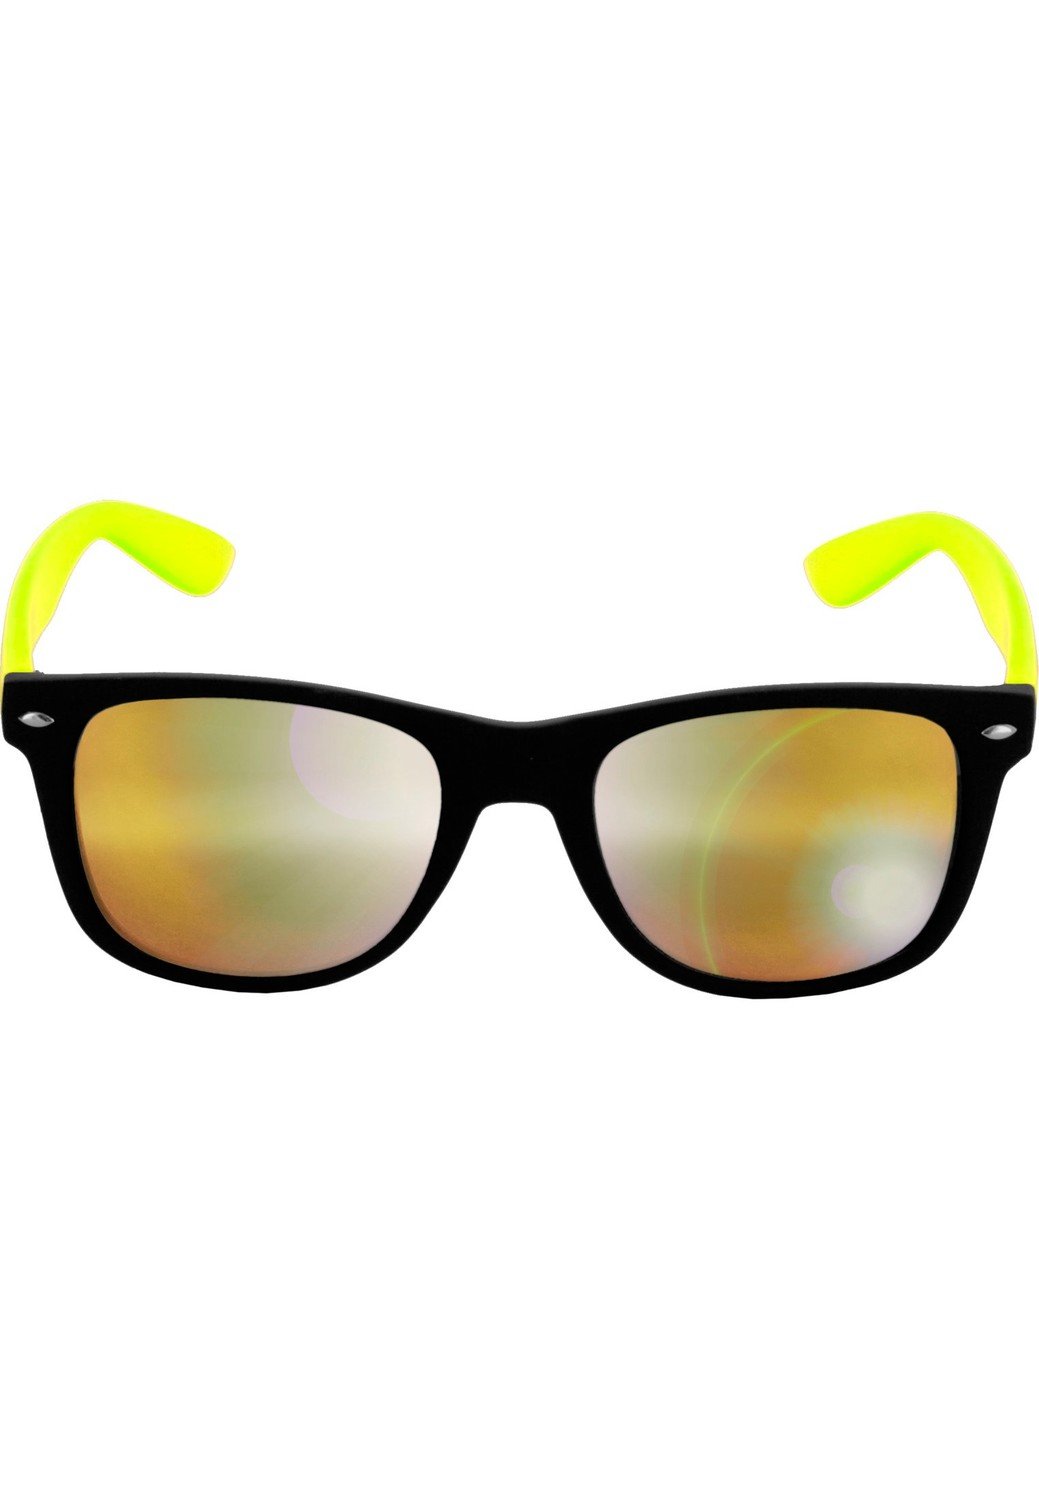 Sluneční brýle Likoma Mirror blk/ylw/ylw